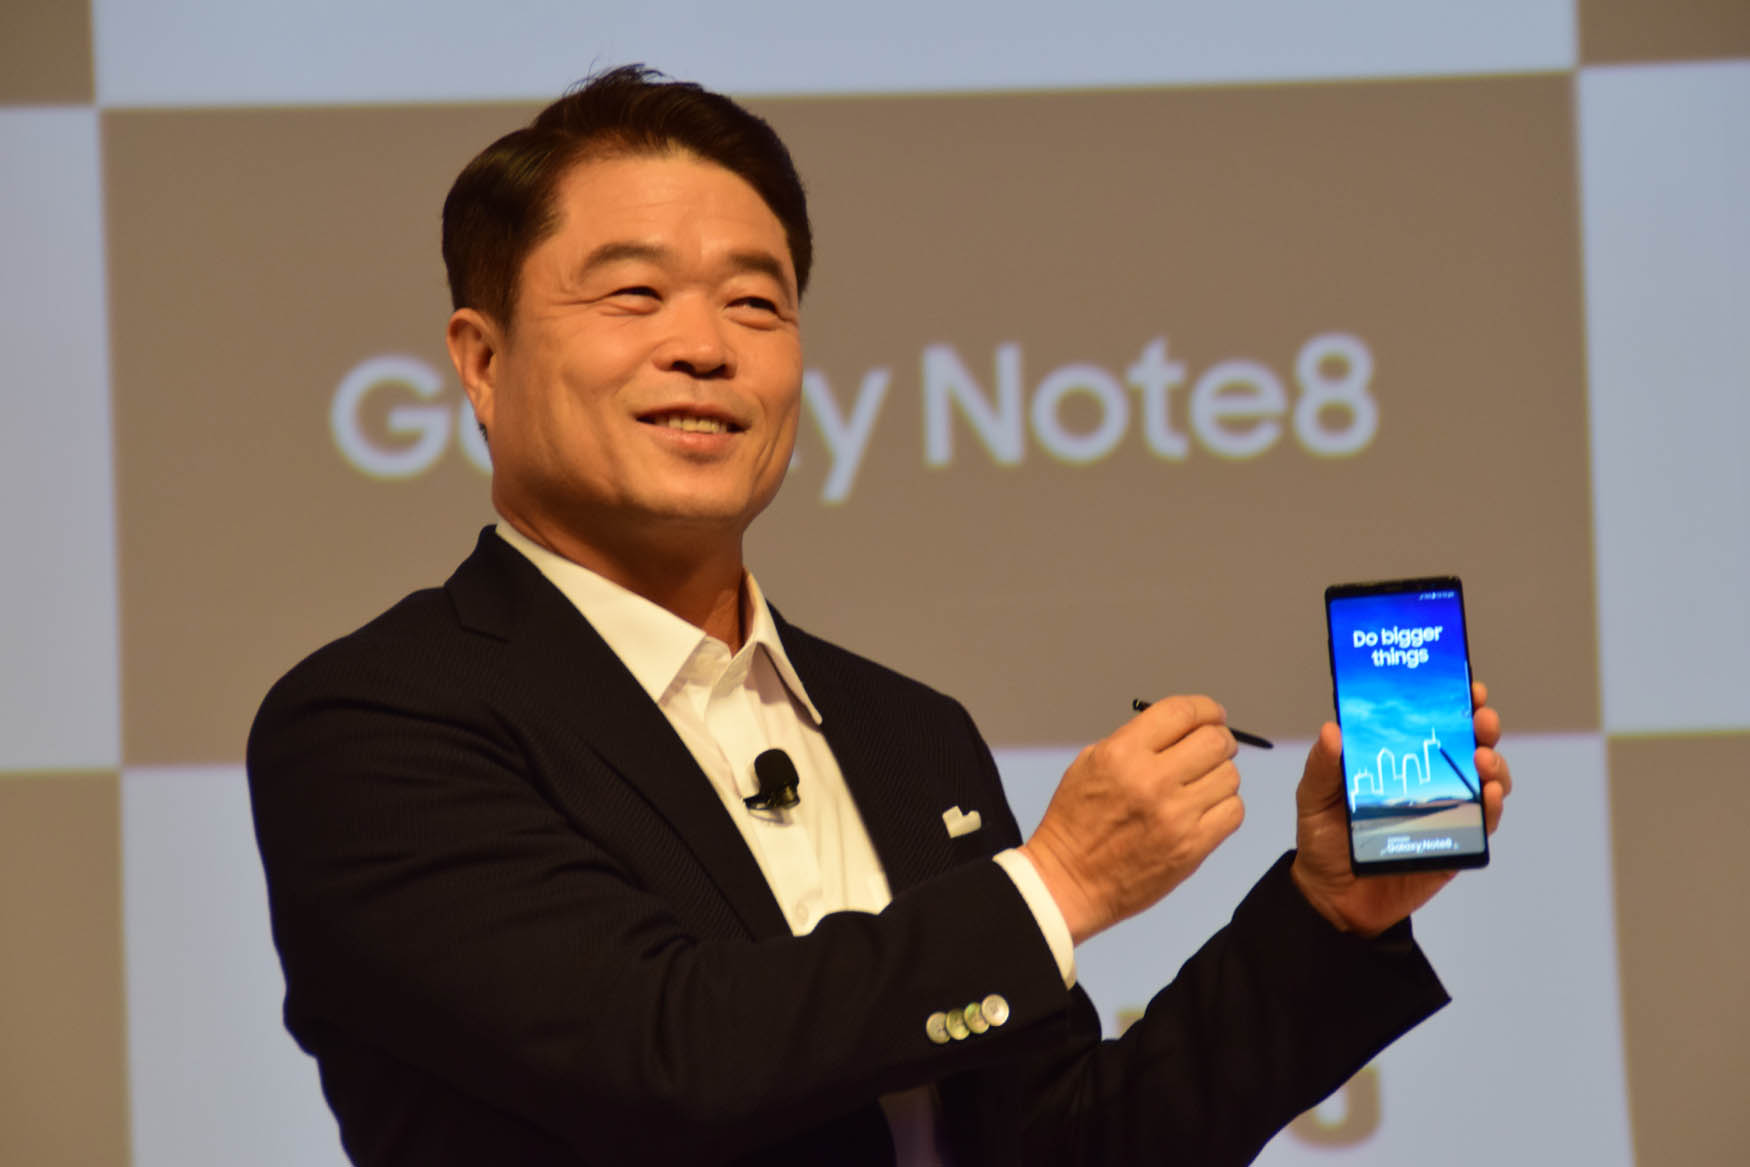 Do Bigger Things: Samsung Galaxy Note8 